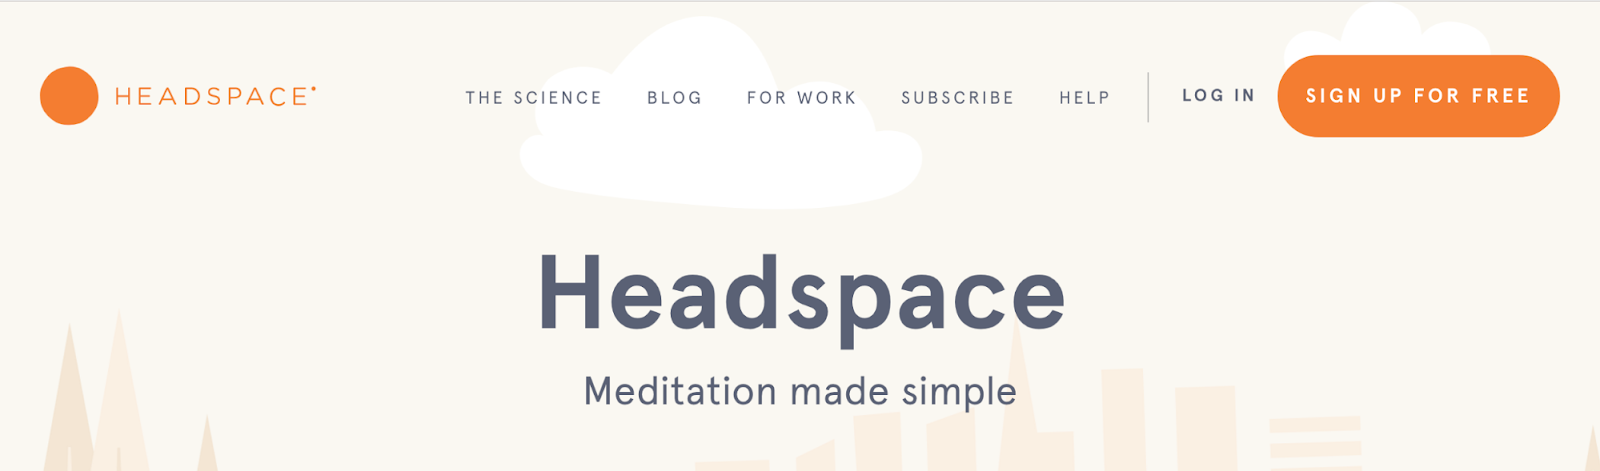 Screenshot showing Headspace